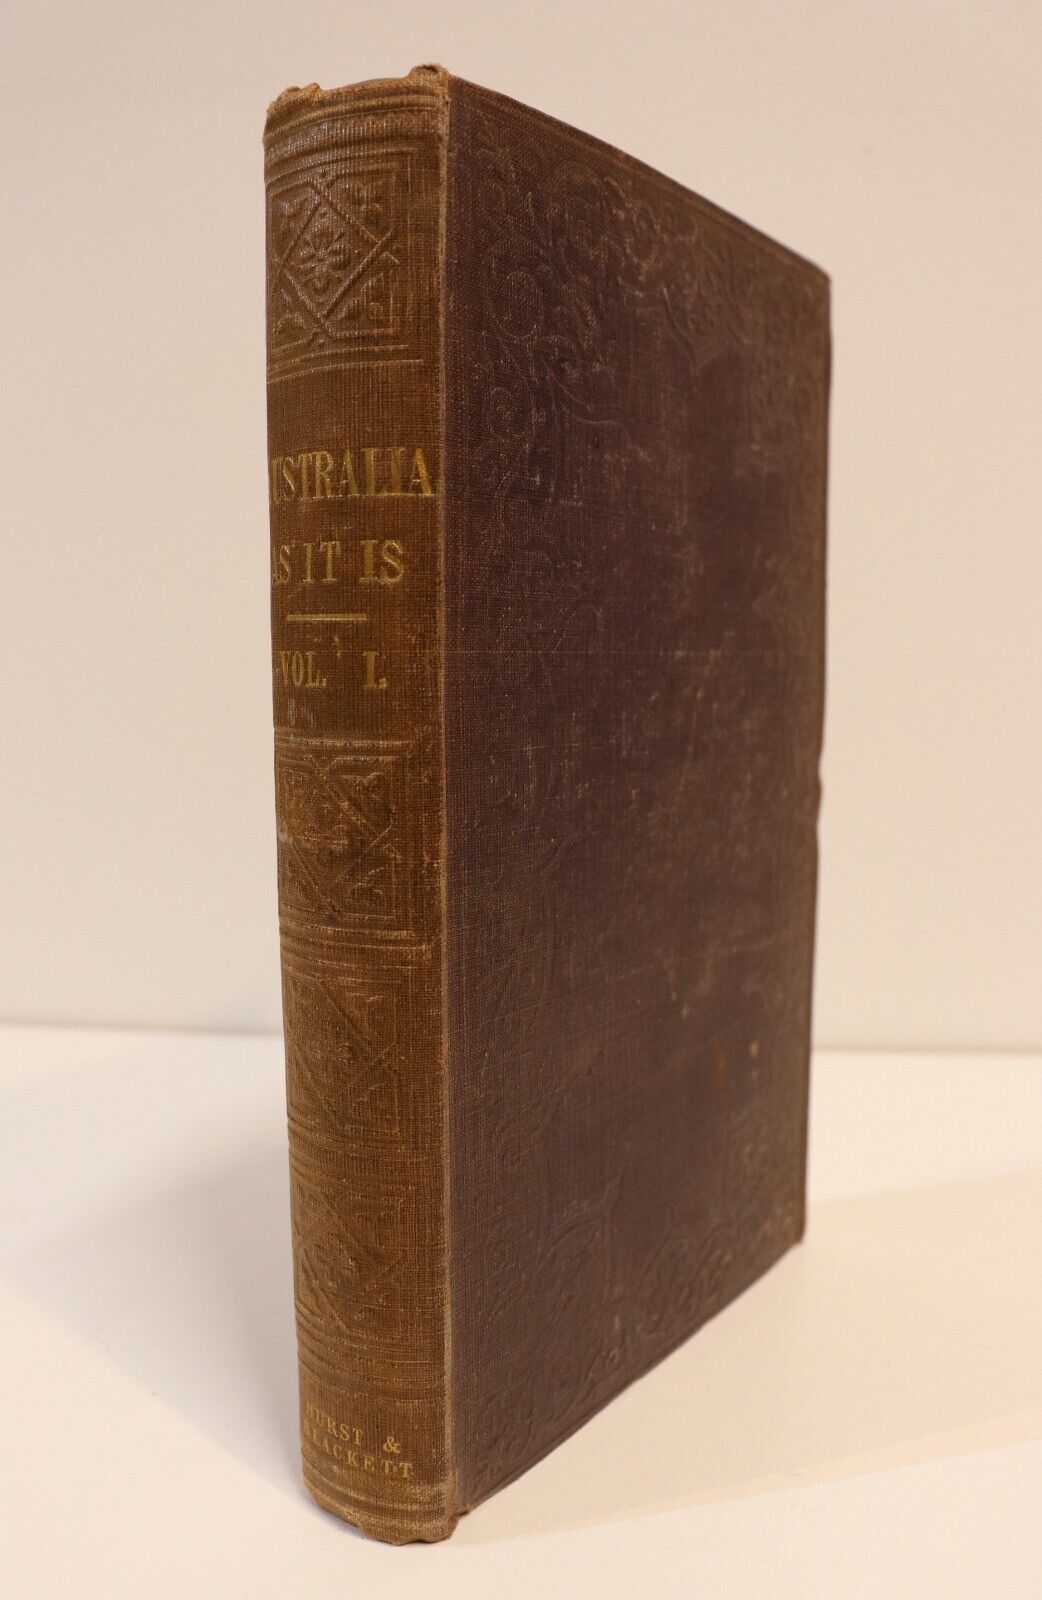 1853 Australia As It Is by F. Lancelott Antiquarian History Book